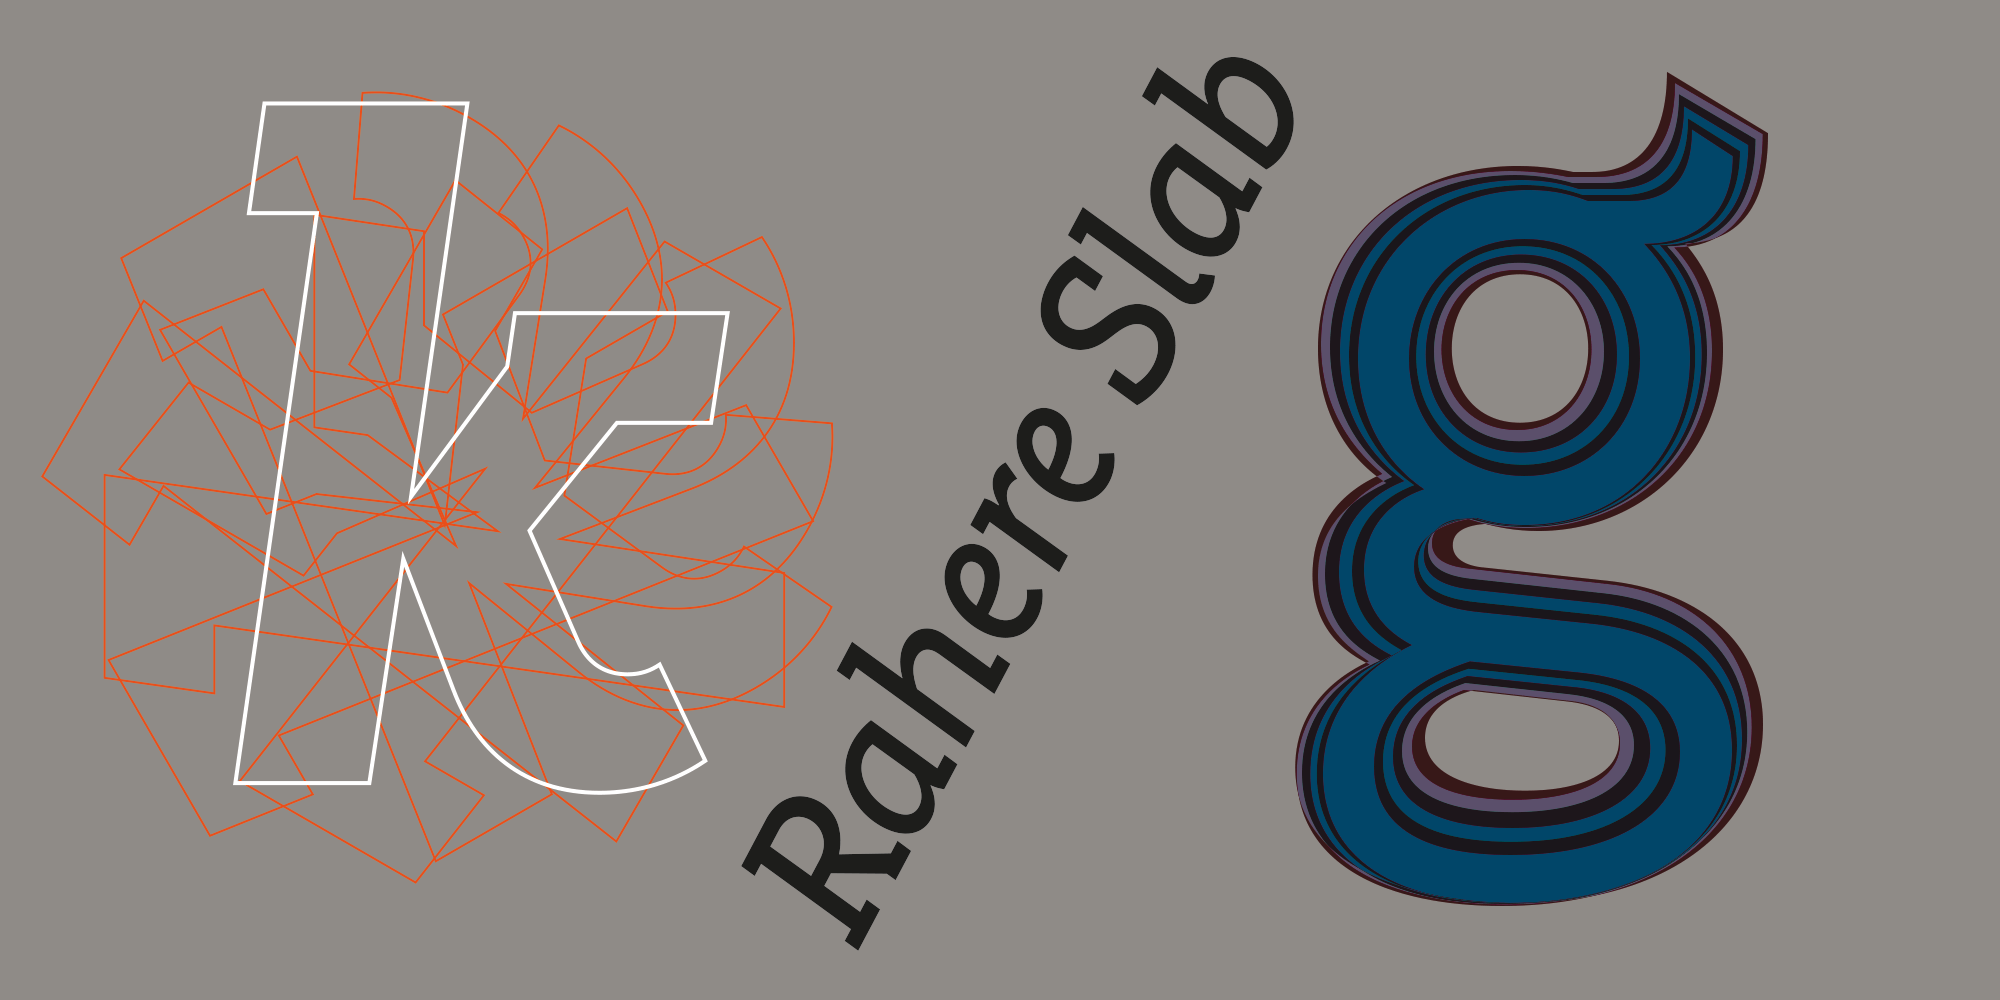 Rahere Slab is a humanist slab serif